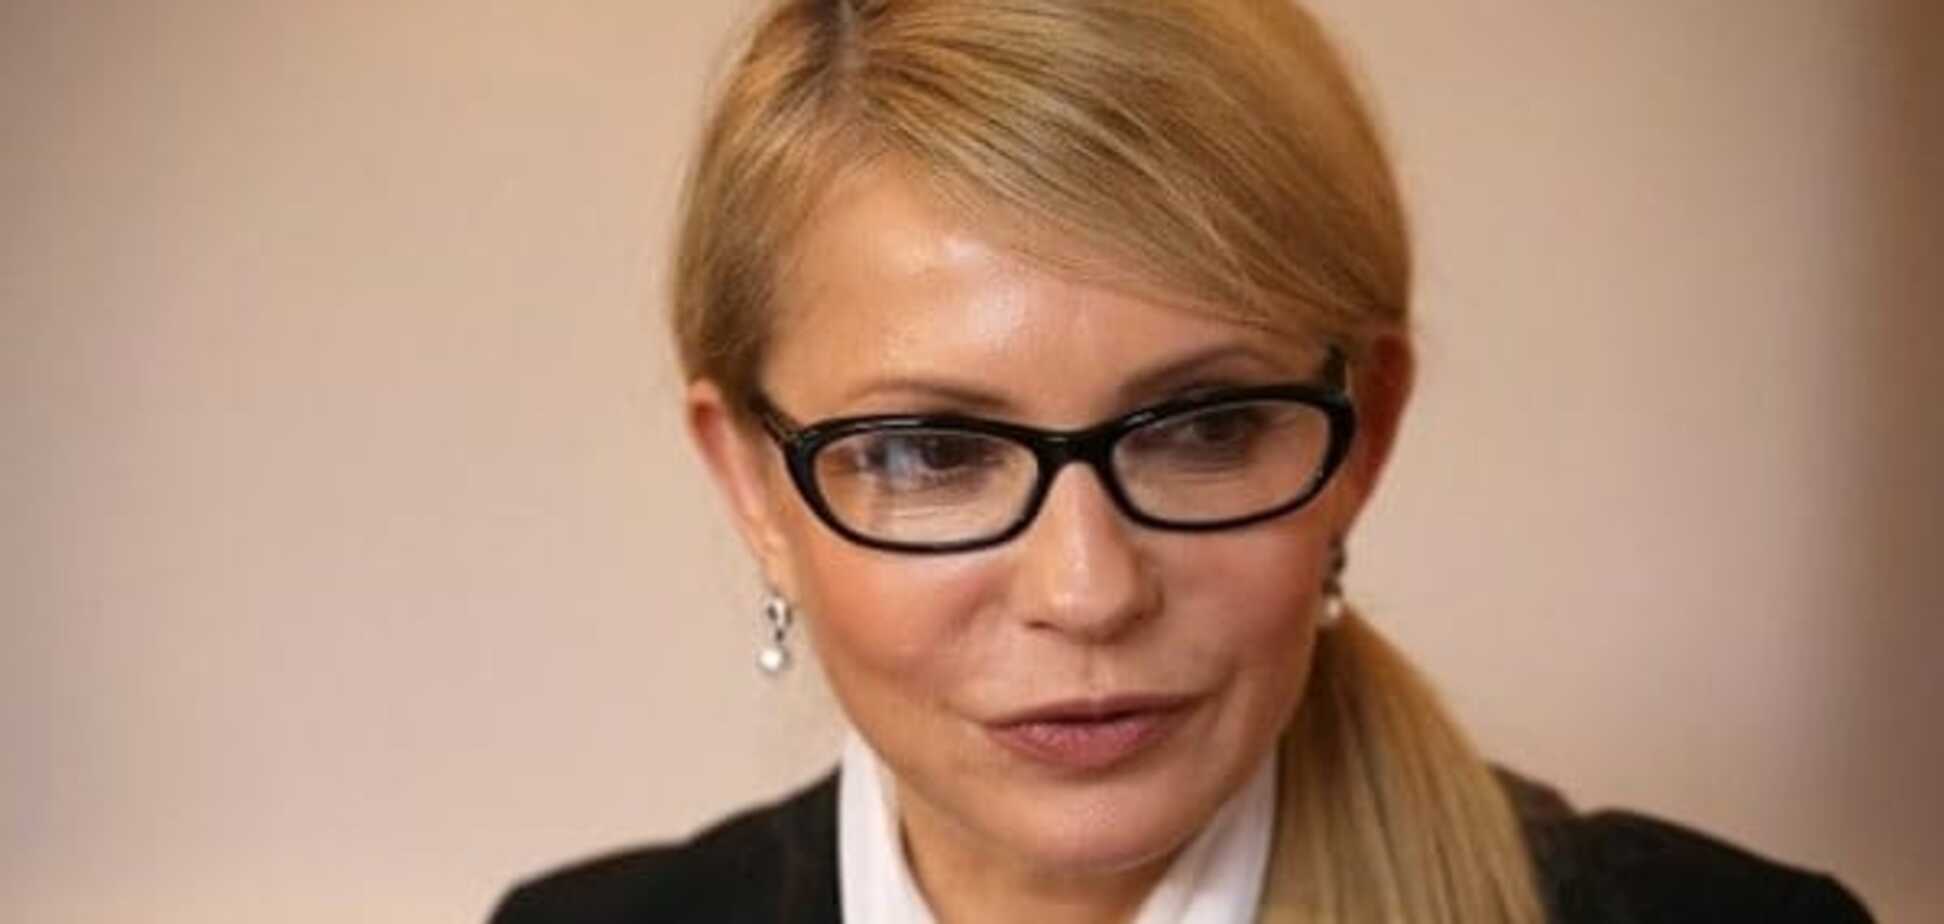 Час припинити абсурд: Тимошенко запропонувала змінити стратегію управління країною